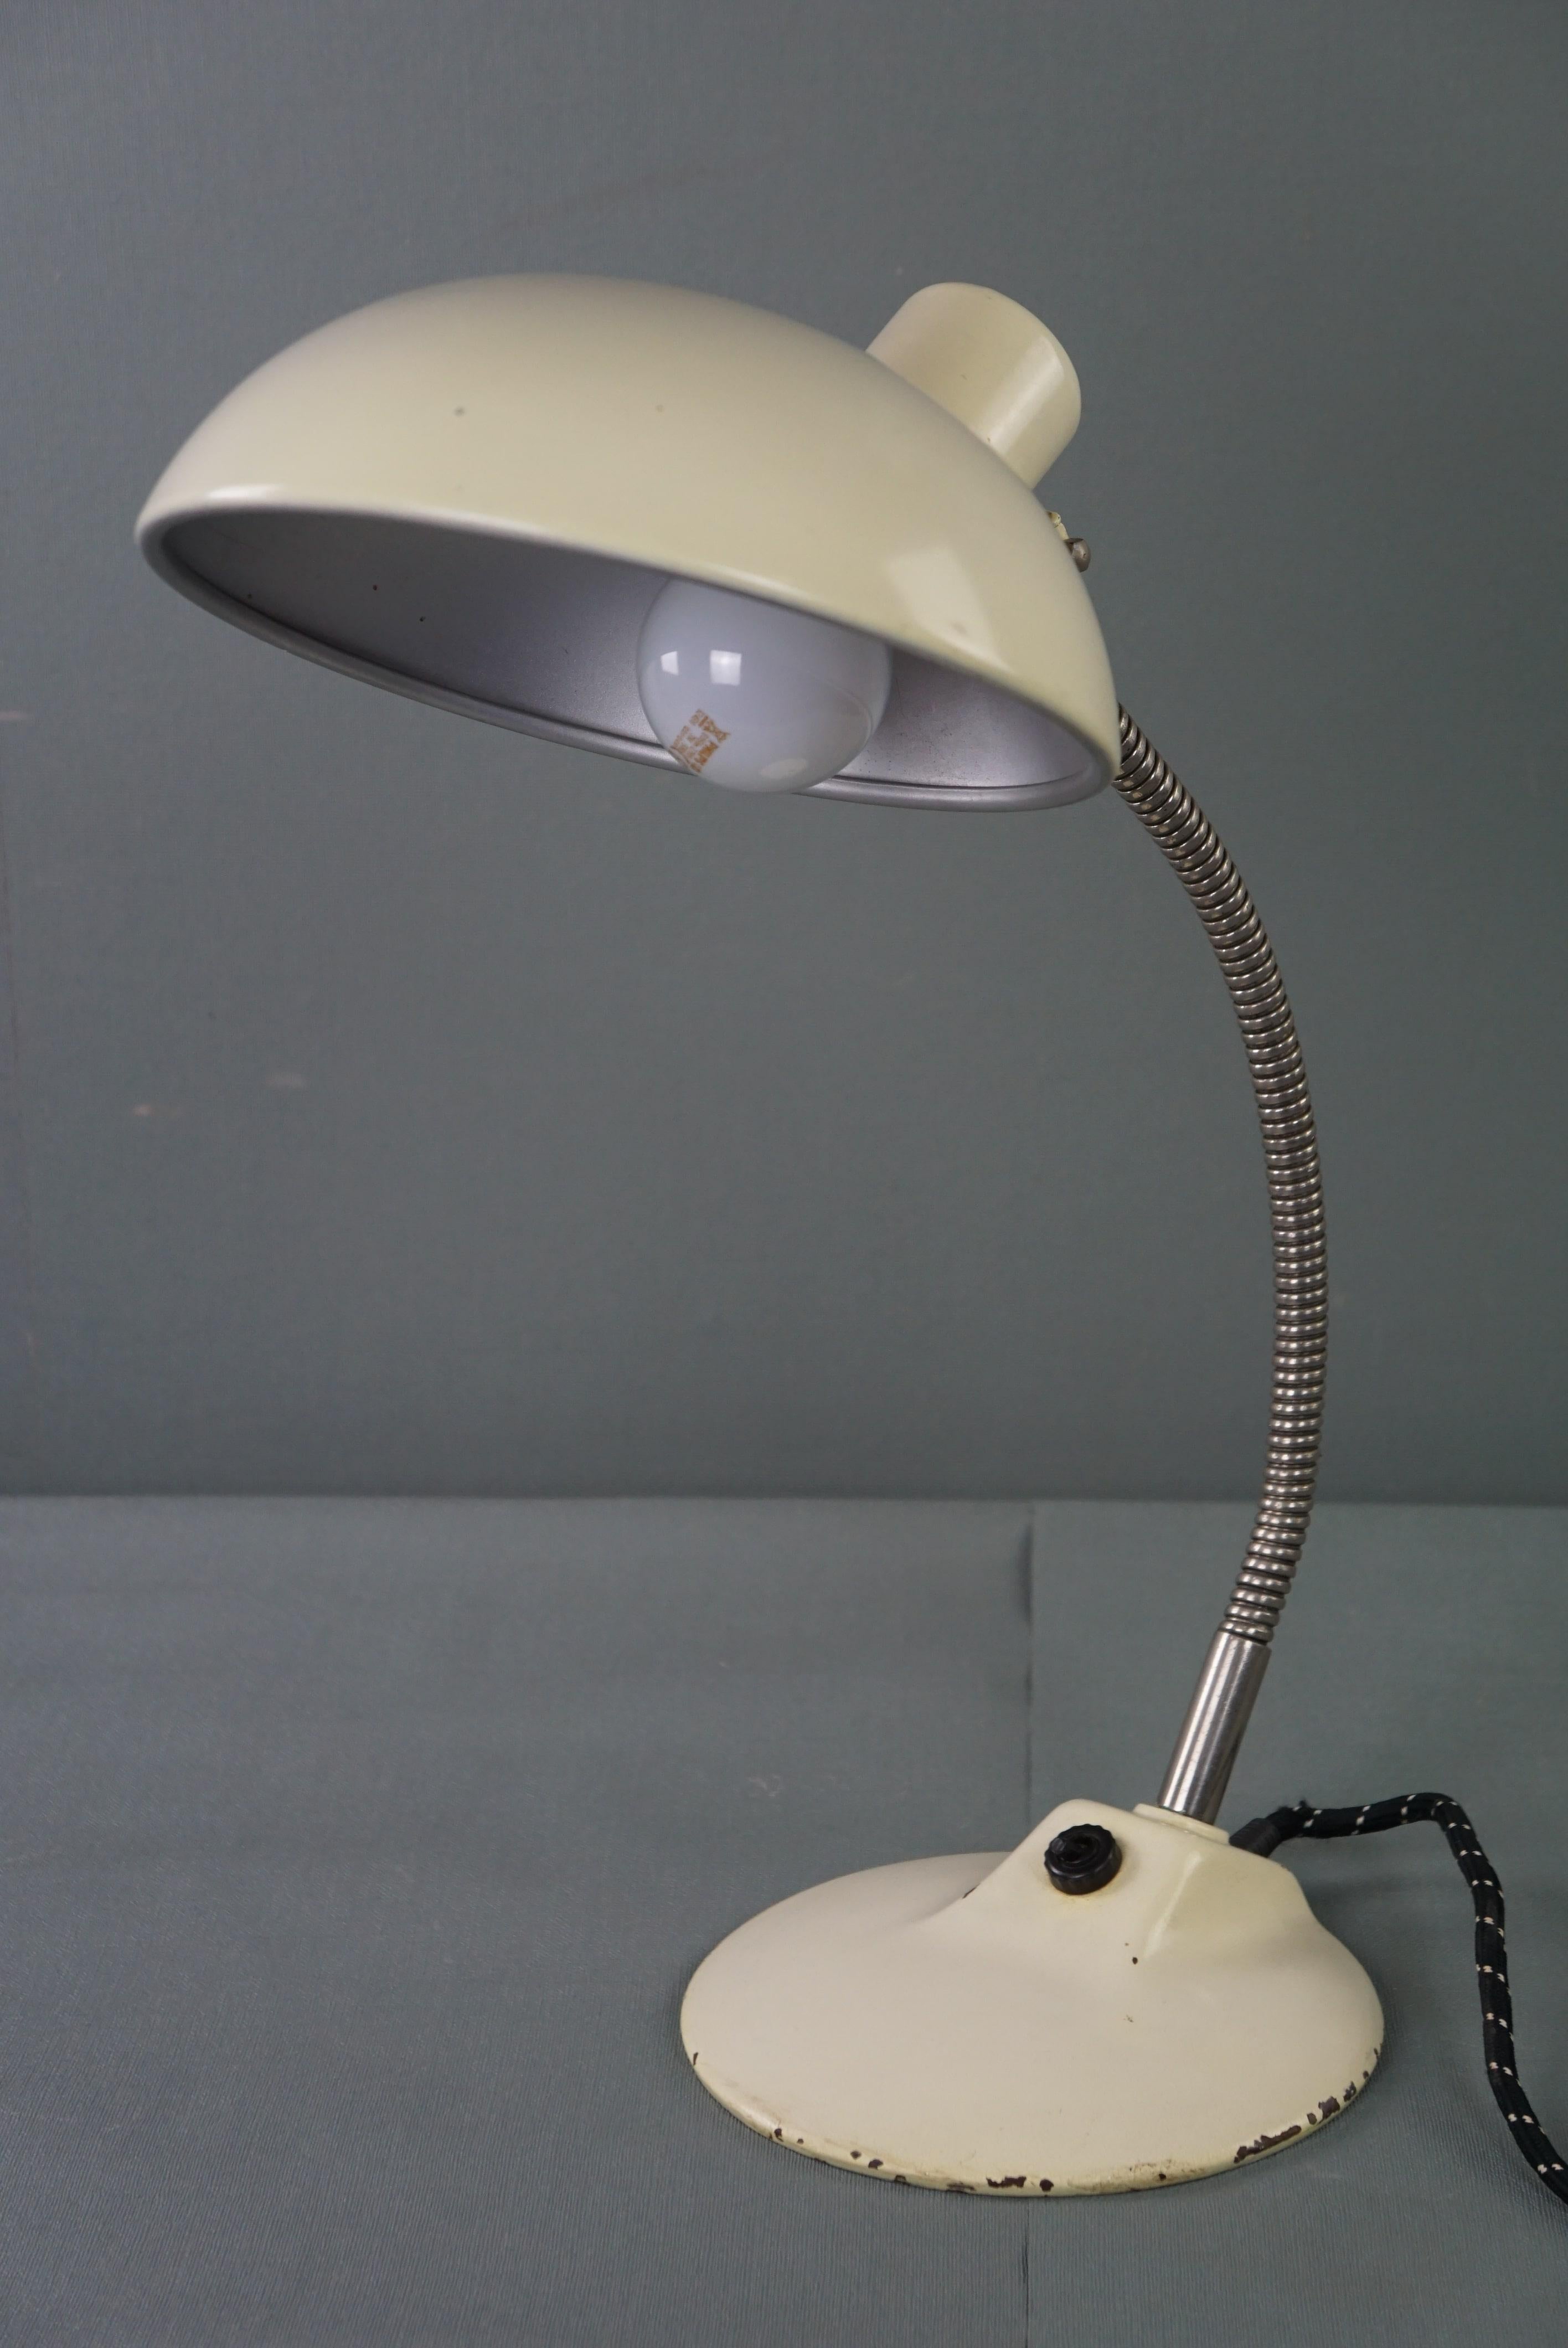 Nous vous proposons cette très belle lampe de bureau en métal blanc de style Bauhaus des années 1960.

Cette magnifique lampe vintage des années 1960 a fière allure sur votre bureau, mais aussi sur votre table de chevet, votre commode ou votre